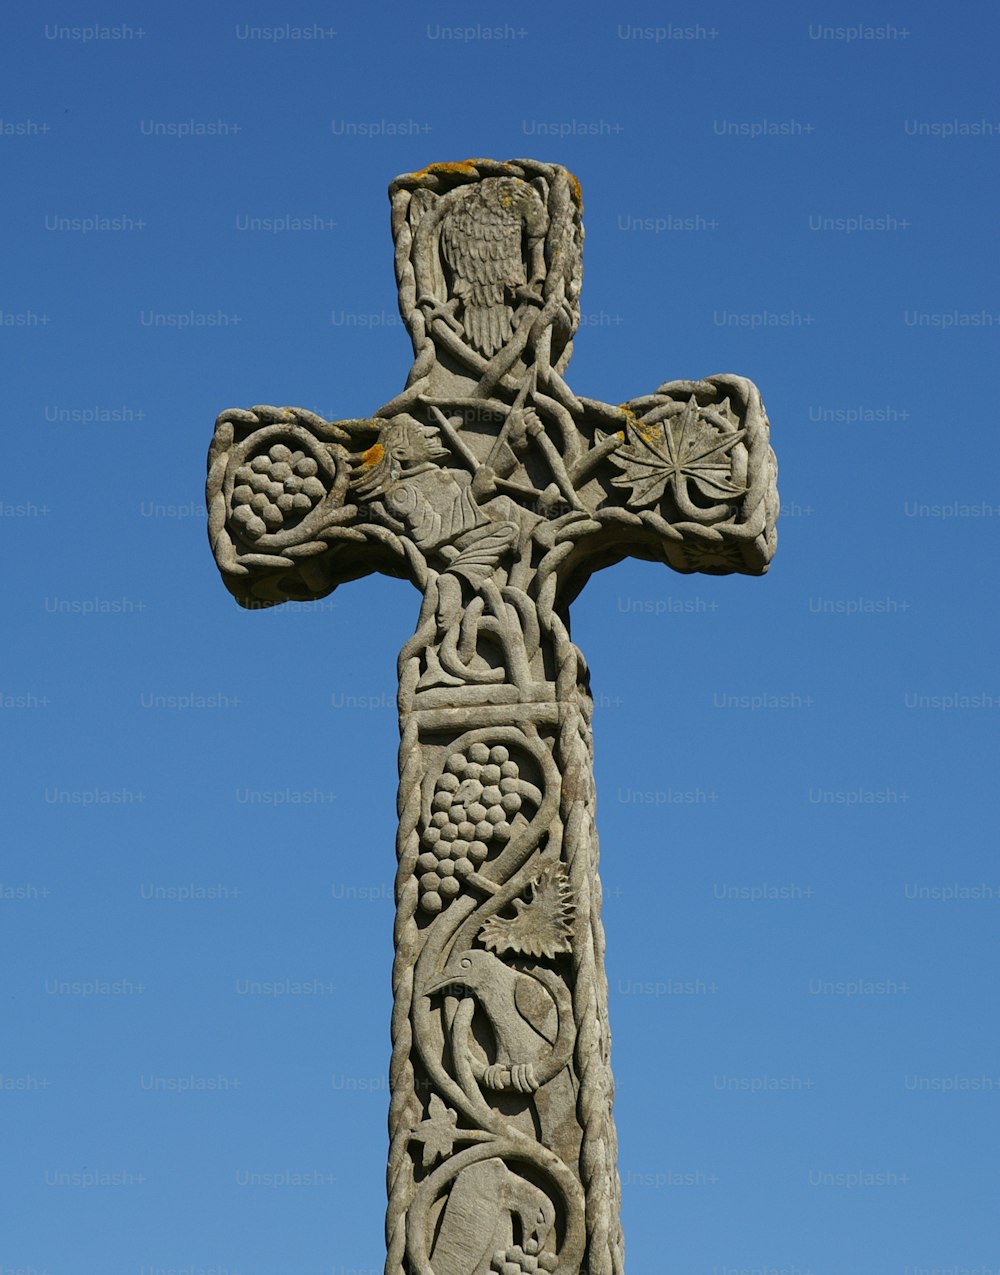 une croix de pierre avec des sculptures dessus contre un ciel bleu